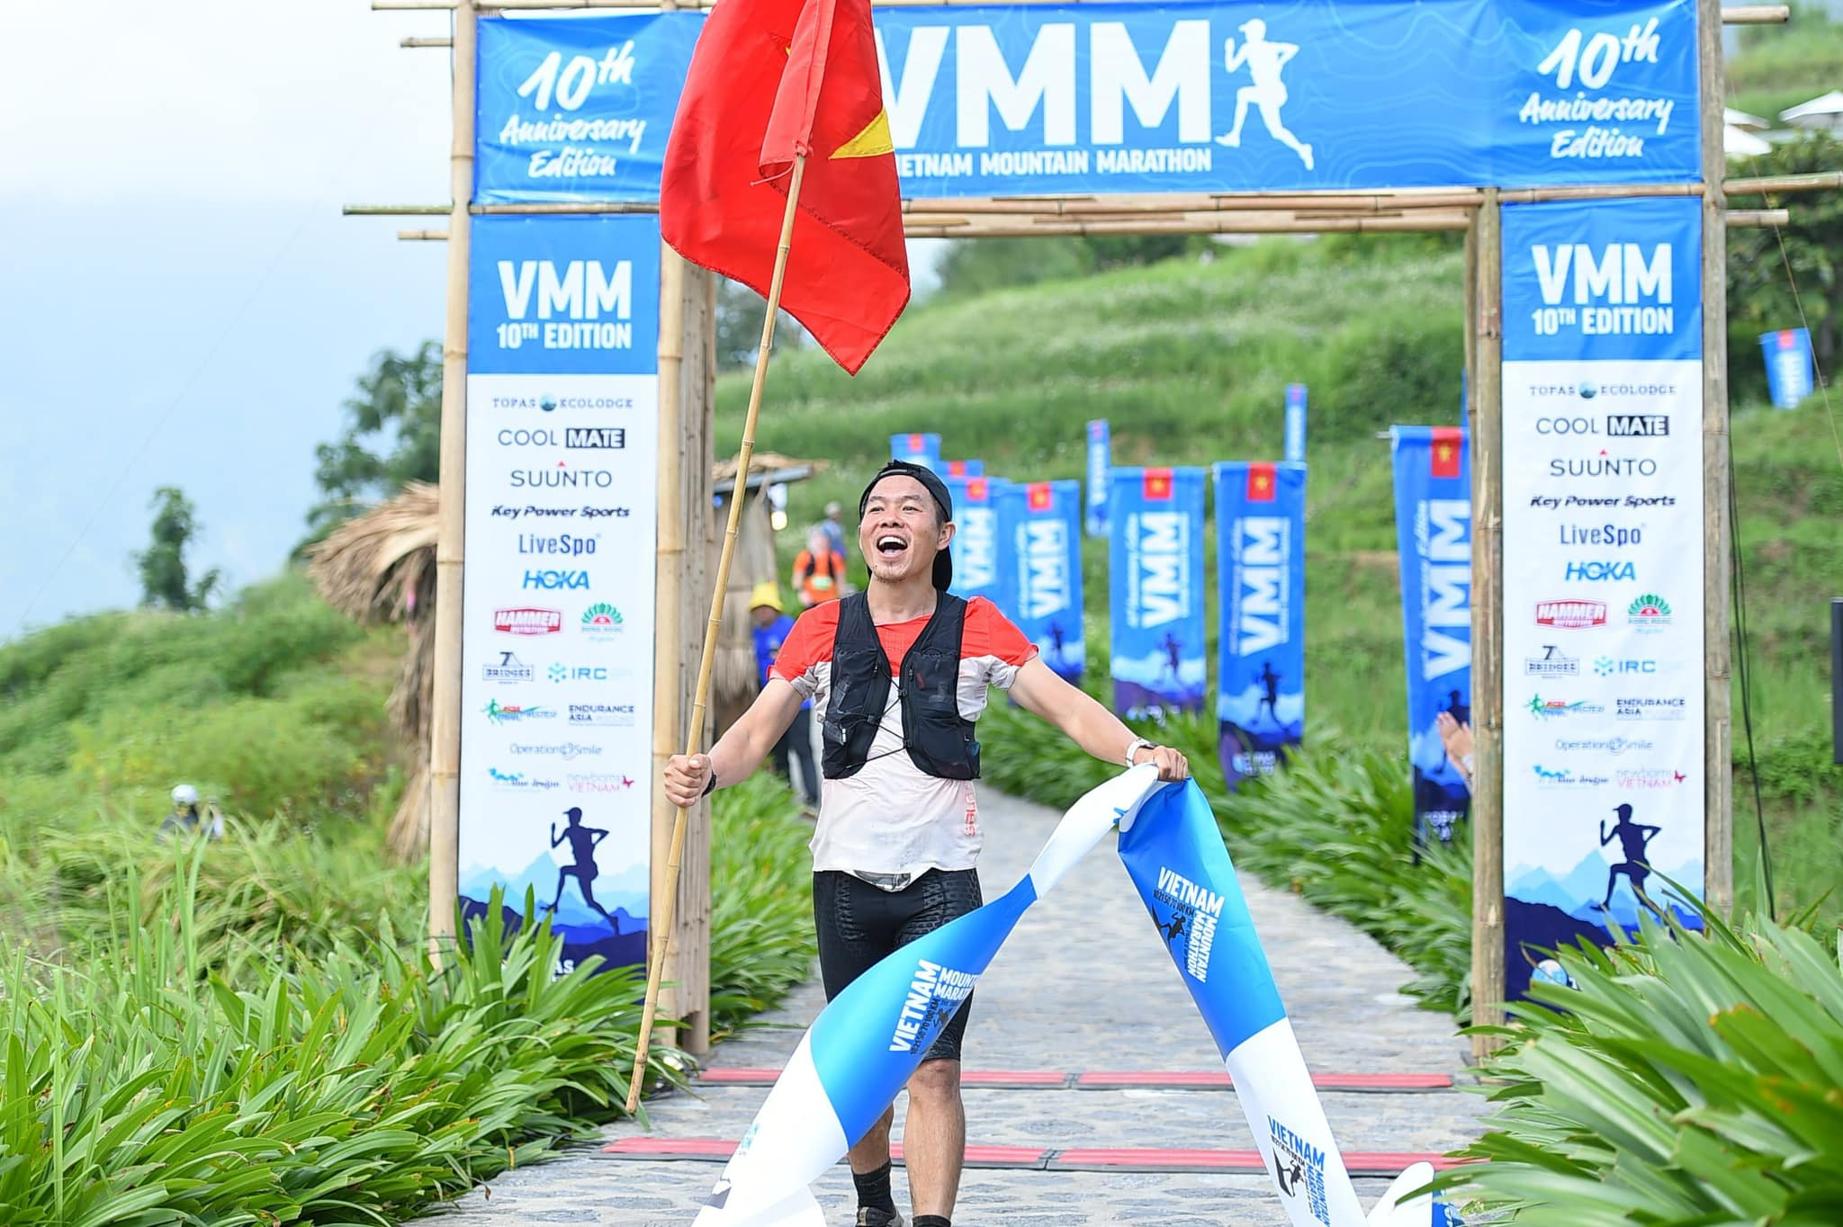 Hùng Hải vượt runner Nepal, vô địch giải trail khó nhất Việt Nam